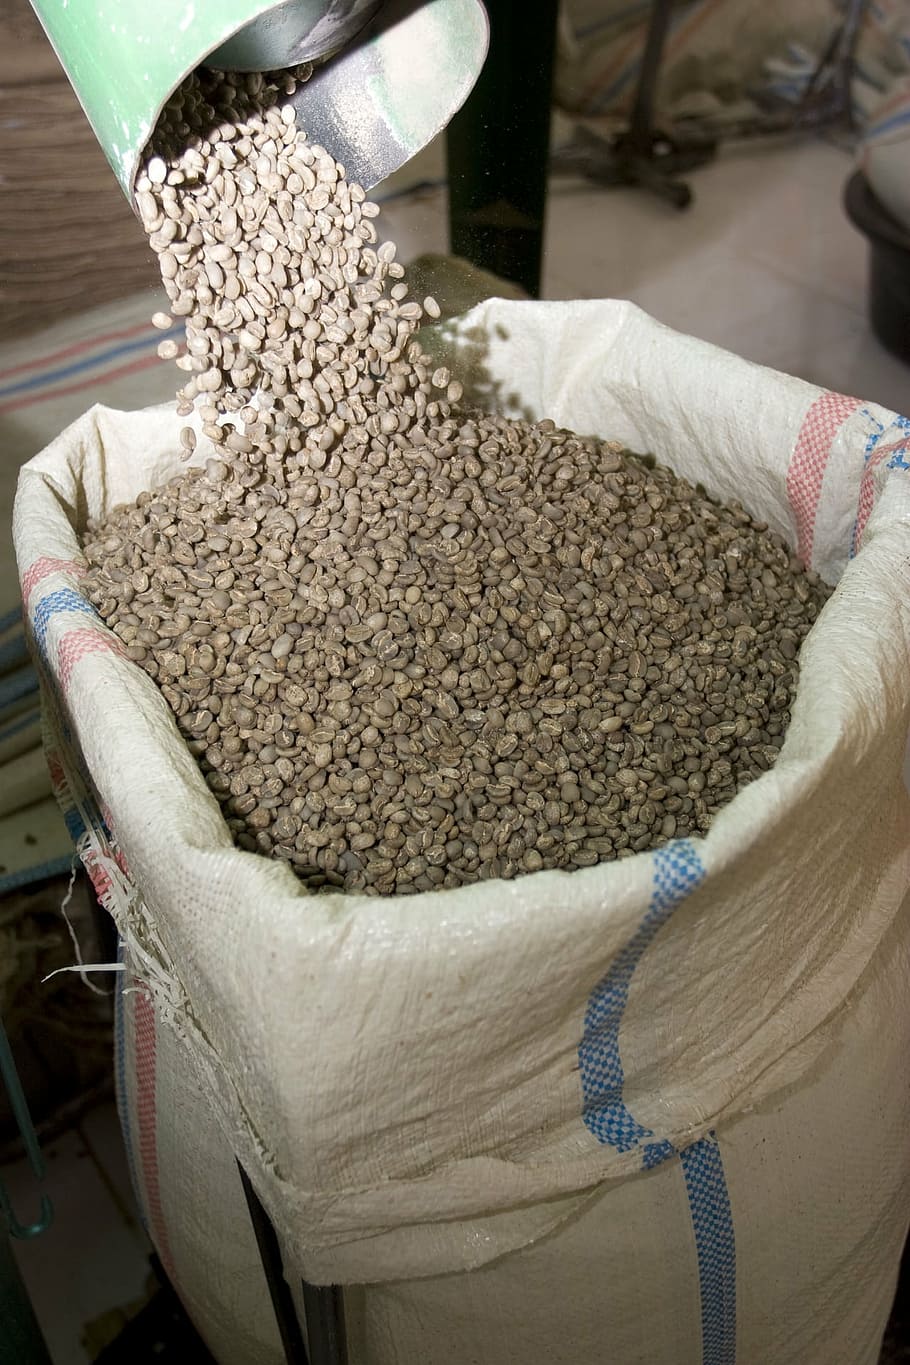 granos de café, crudo, marrón, saco, bolsa, embalaje, envío, mercado, agricultura, agricultor